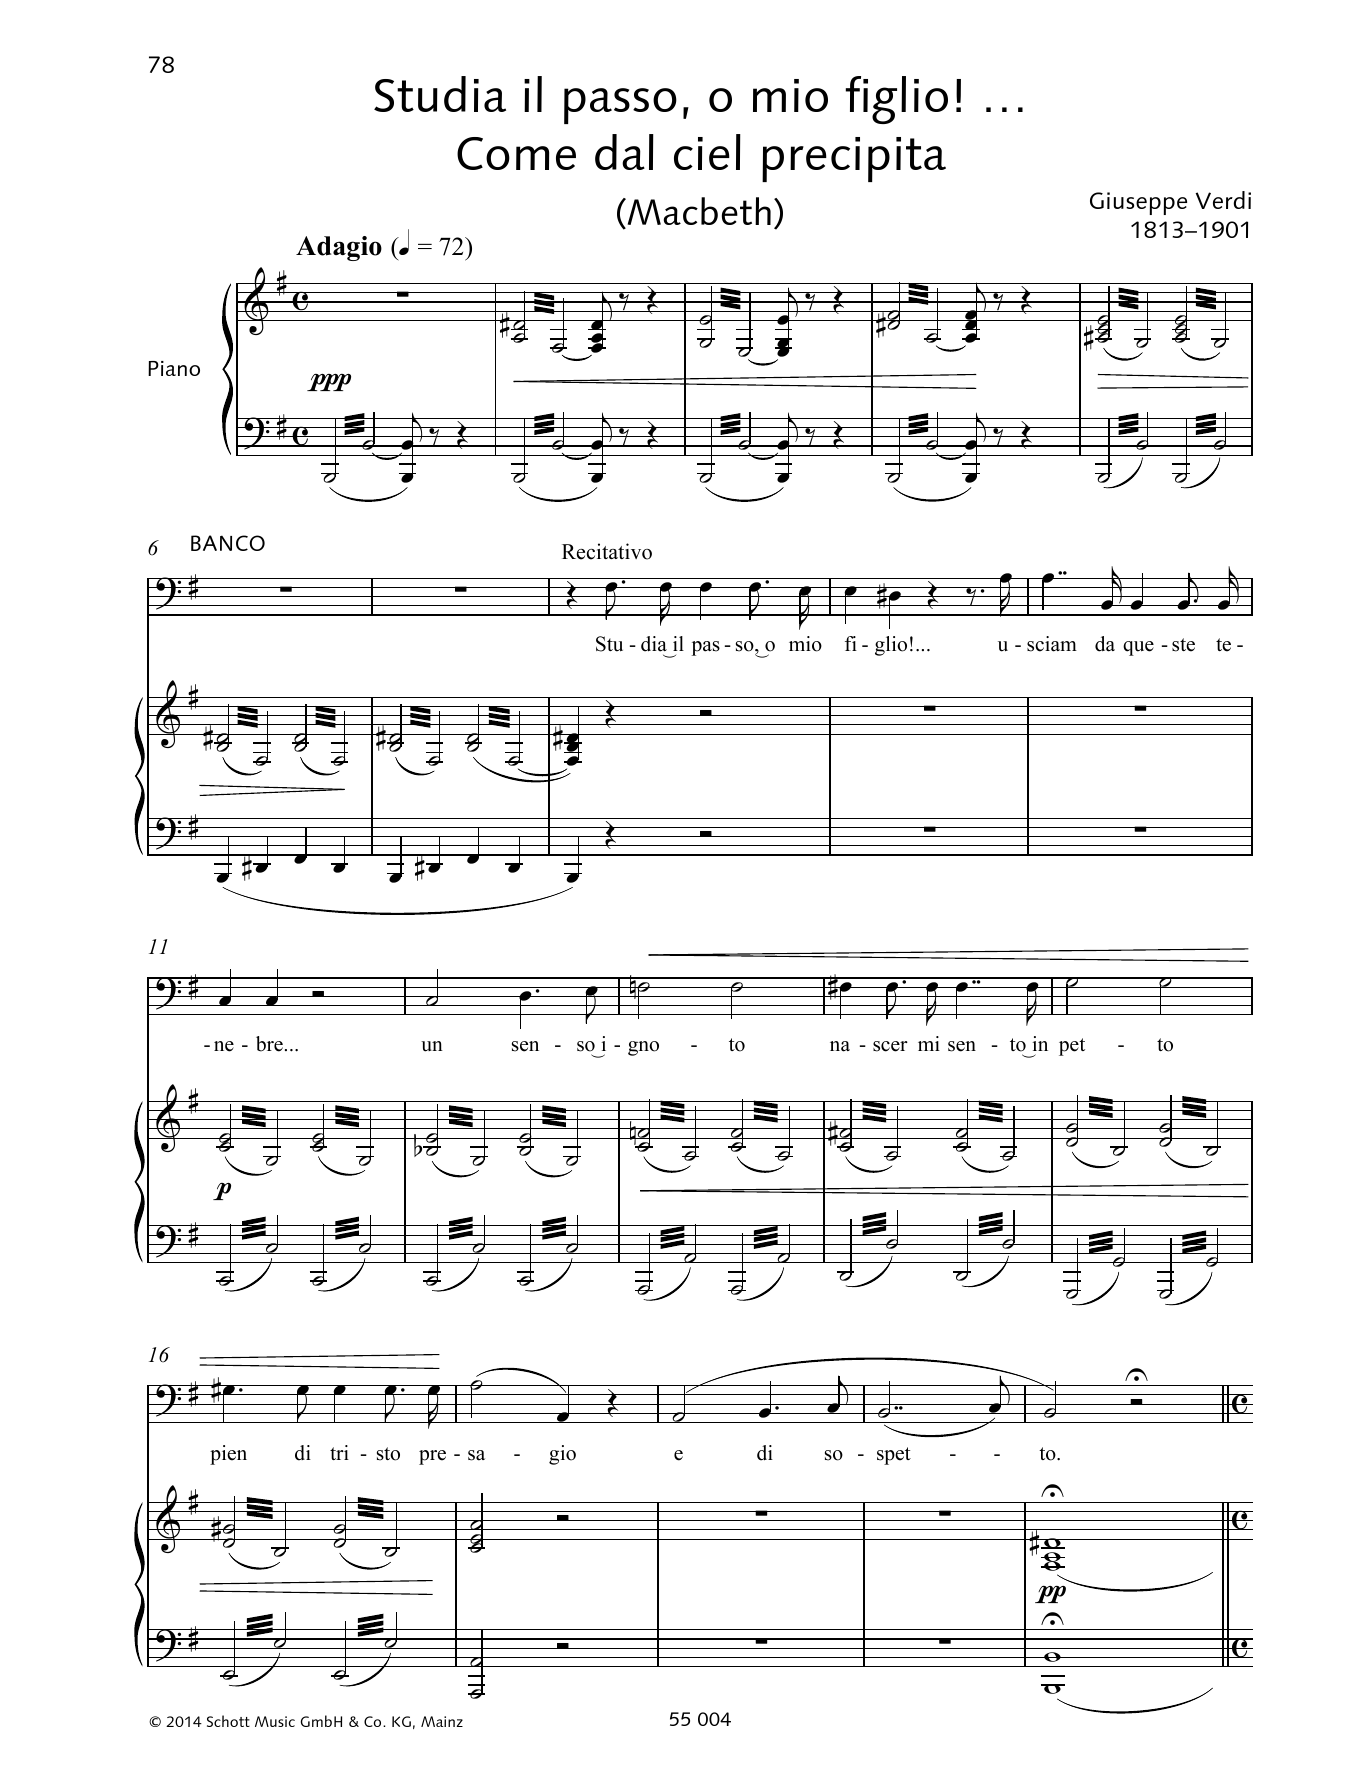 Download Giuseppe Verdi Studia il passo, o mio figlio!... Come dal ciel precipita Sheet Music and learn how to play Piano & Vocal PDF digital score in minutes